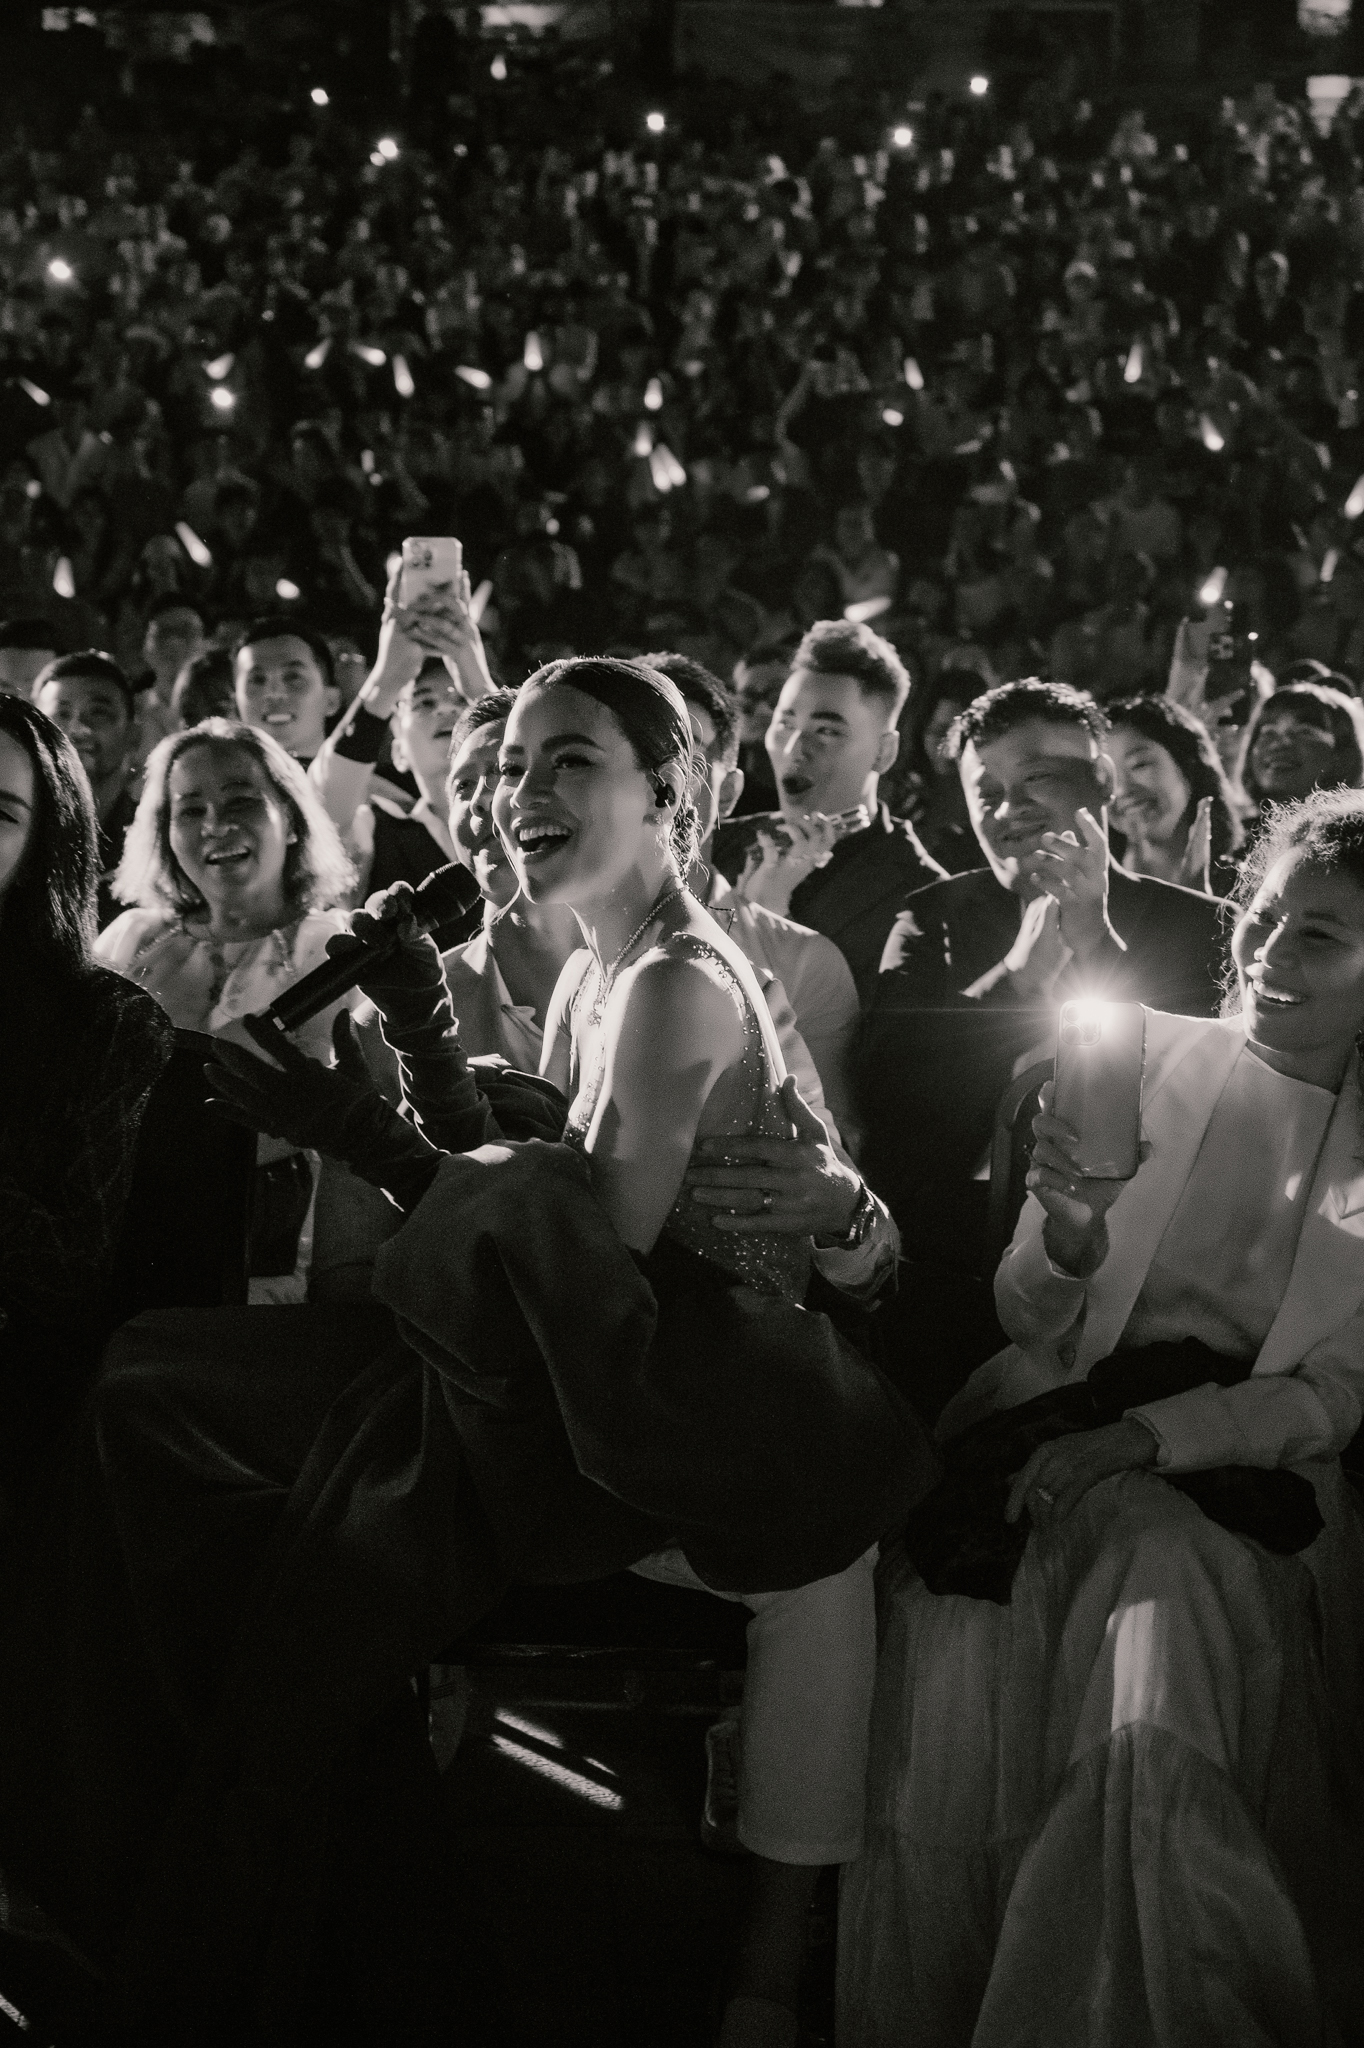 Hồ Ngọc Hà ngồi trên đùi của Kim Lý khi hát 'Cả một trời thương nhớ'